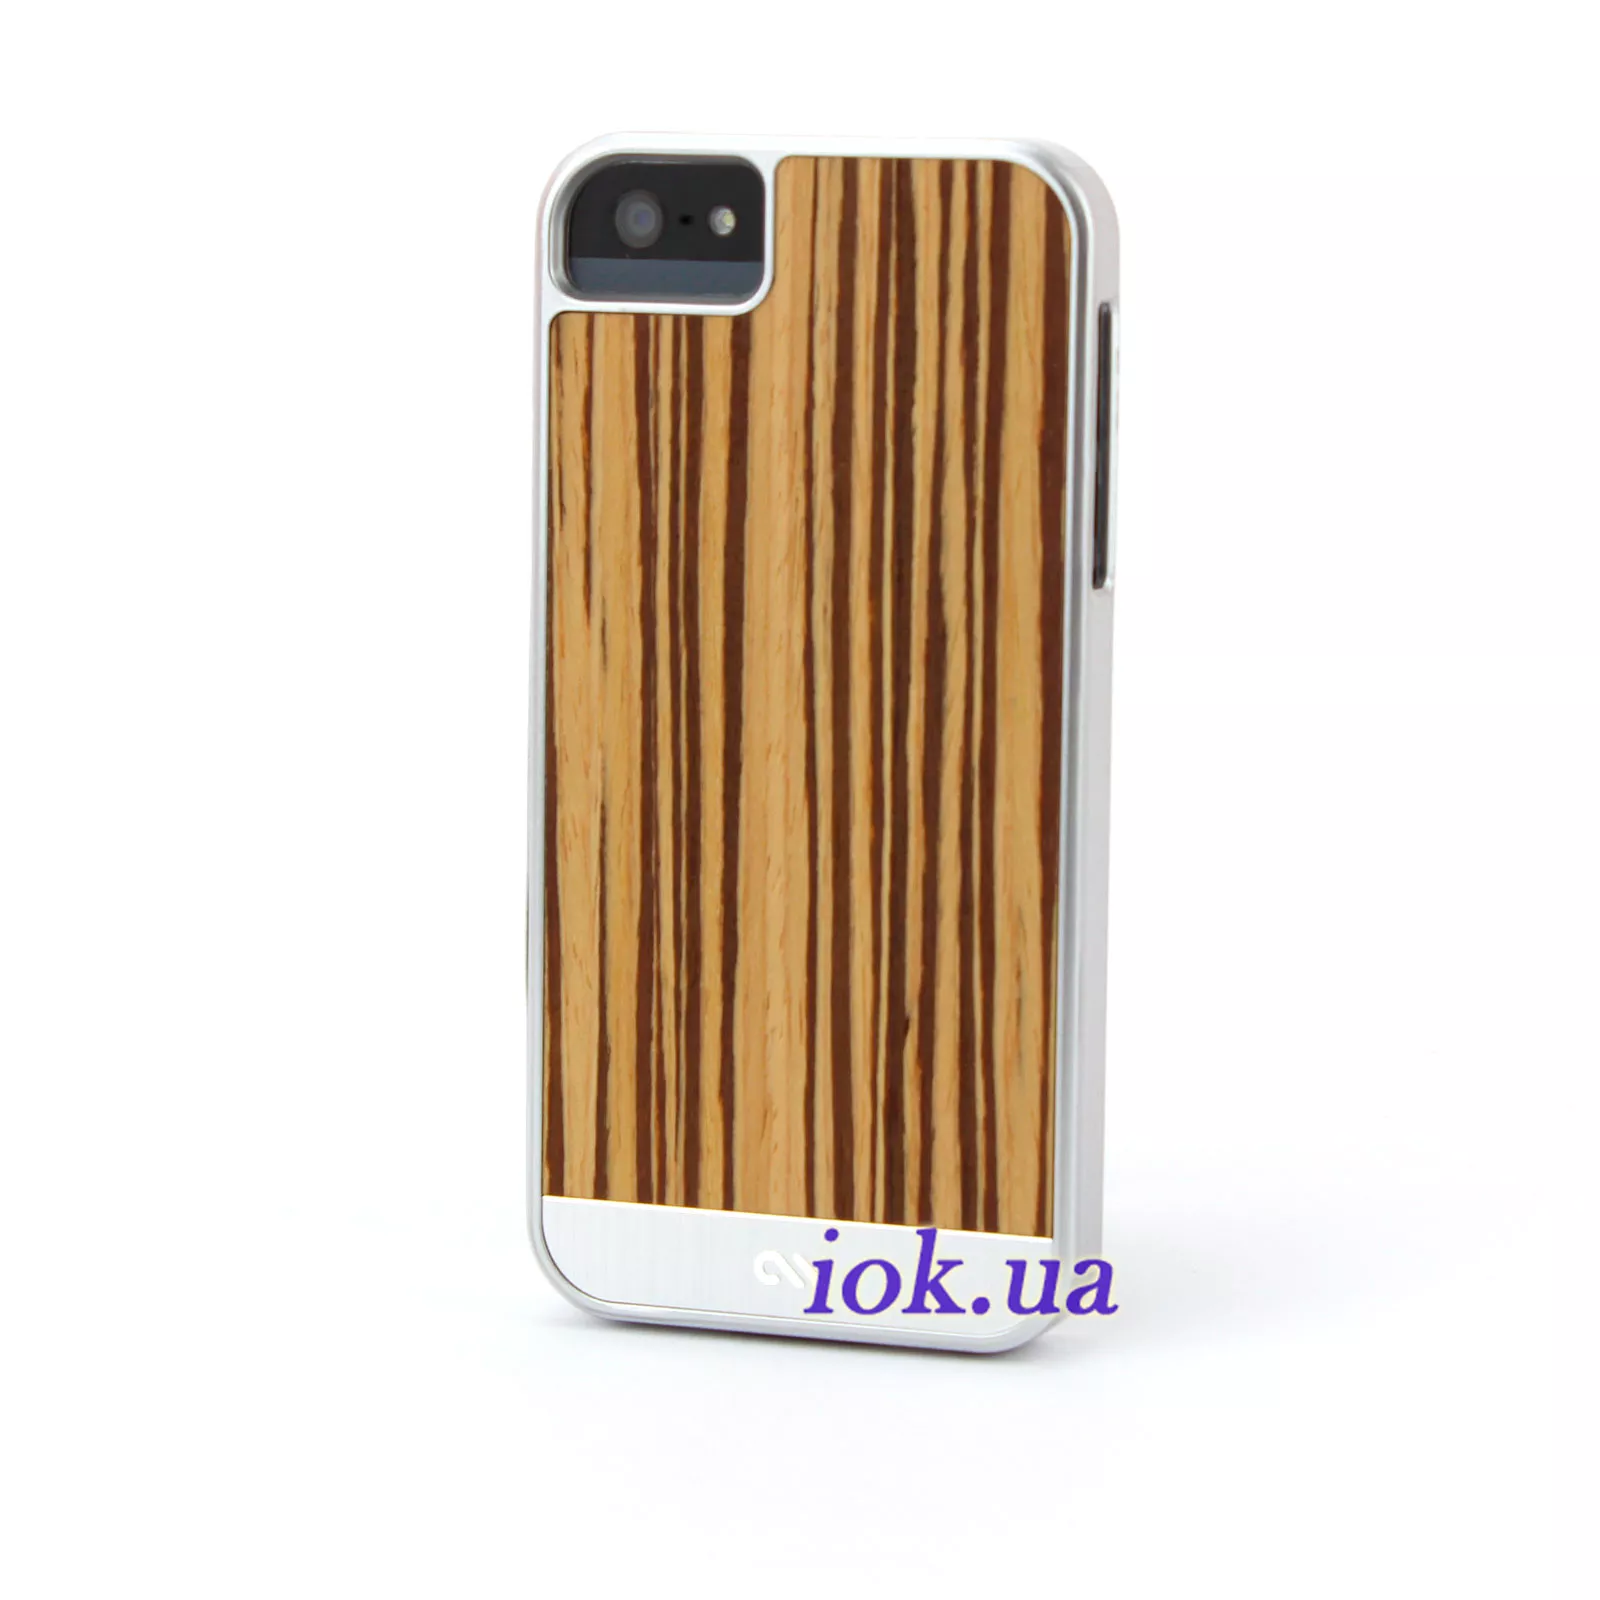 Чехол с деревянной вставкой Case-Mate для iPhone 5/5S